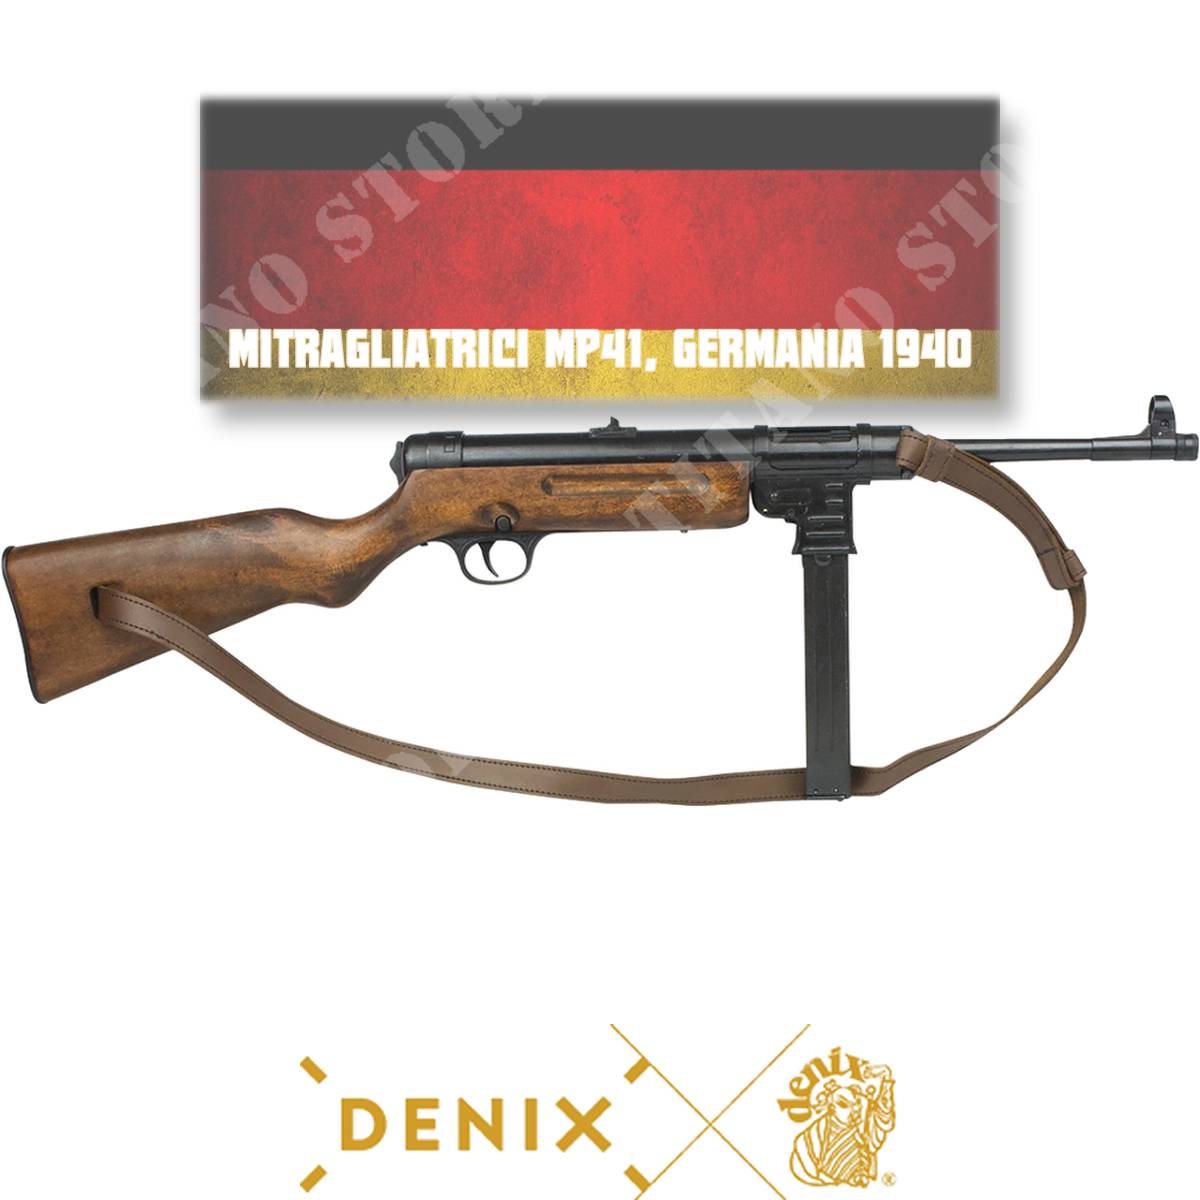 Replica machine gun mp41 1940 denix (01124): First and second